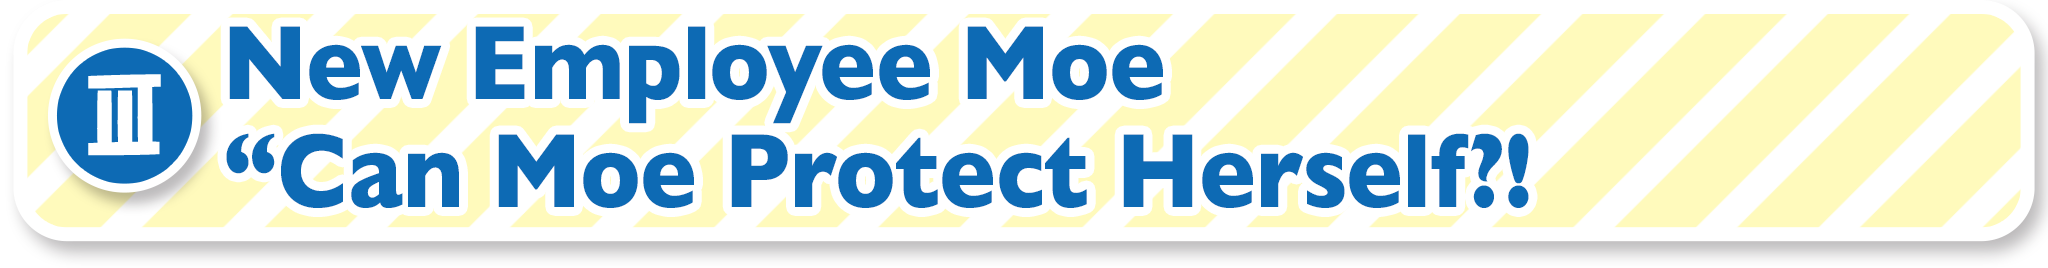 (III) New Employee Moe “Can Moe Protect Herself?!”